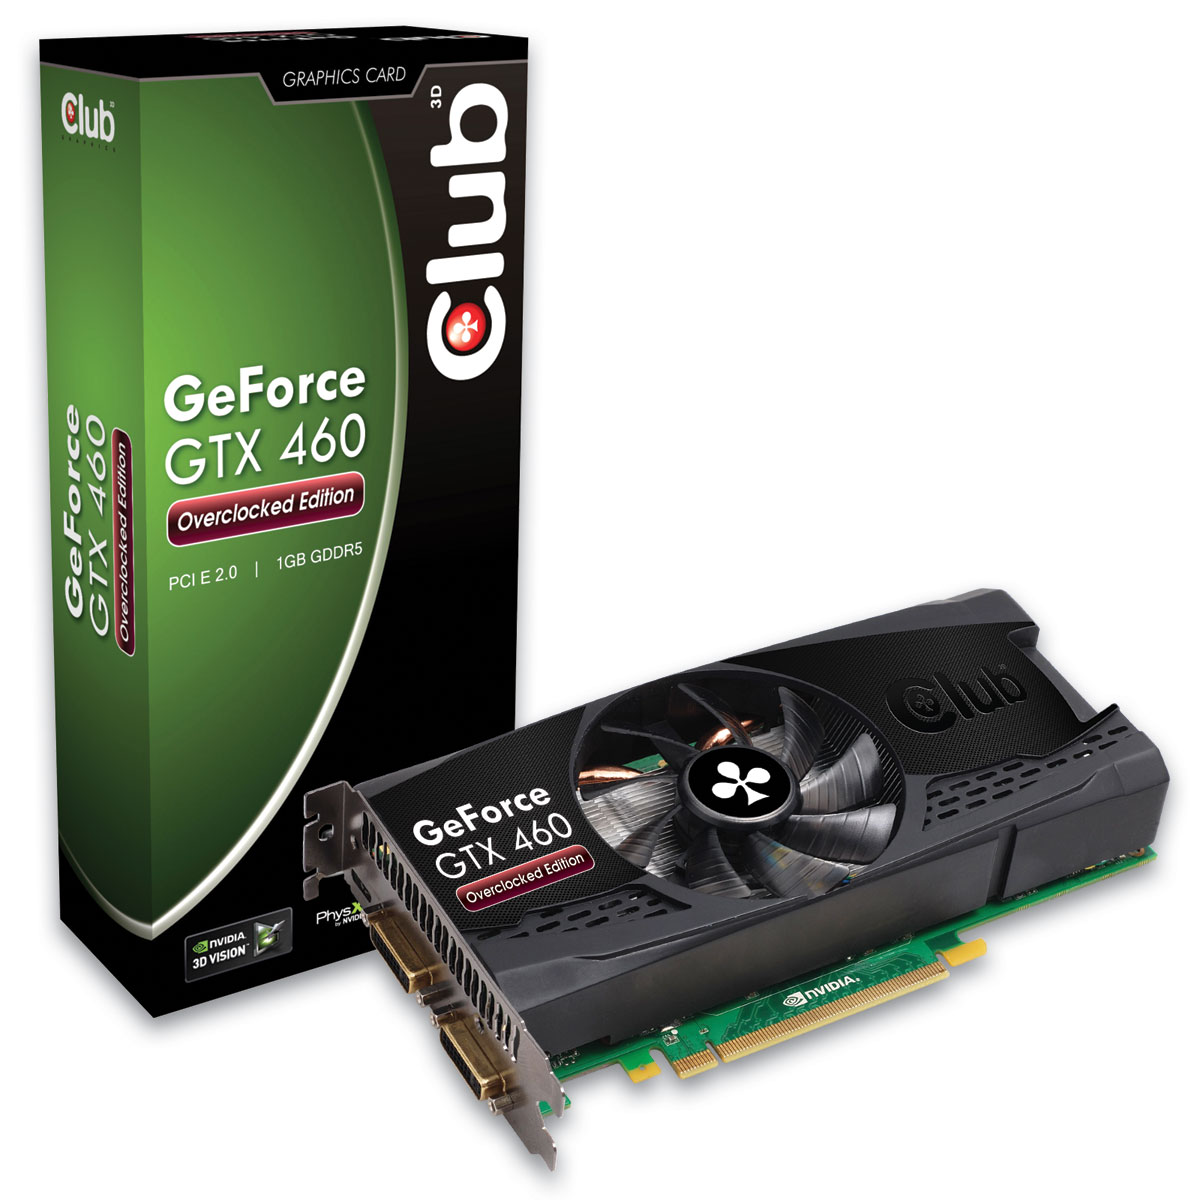 Immagine pubblicata in relazione al seguente contenuto: Club 3D lancia due Geforce GTX 460 Overclocked Edition | Nome immagine: news13683_1.jpg